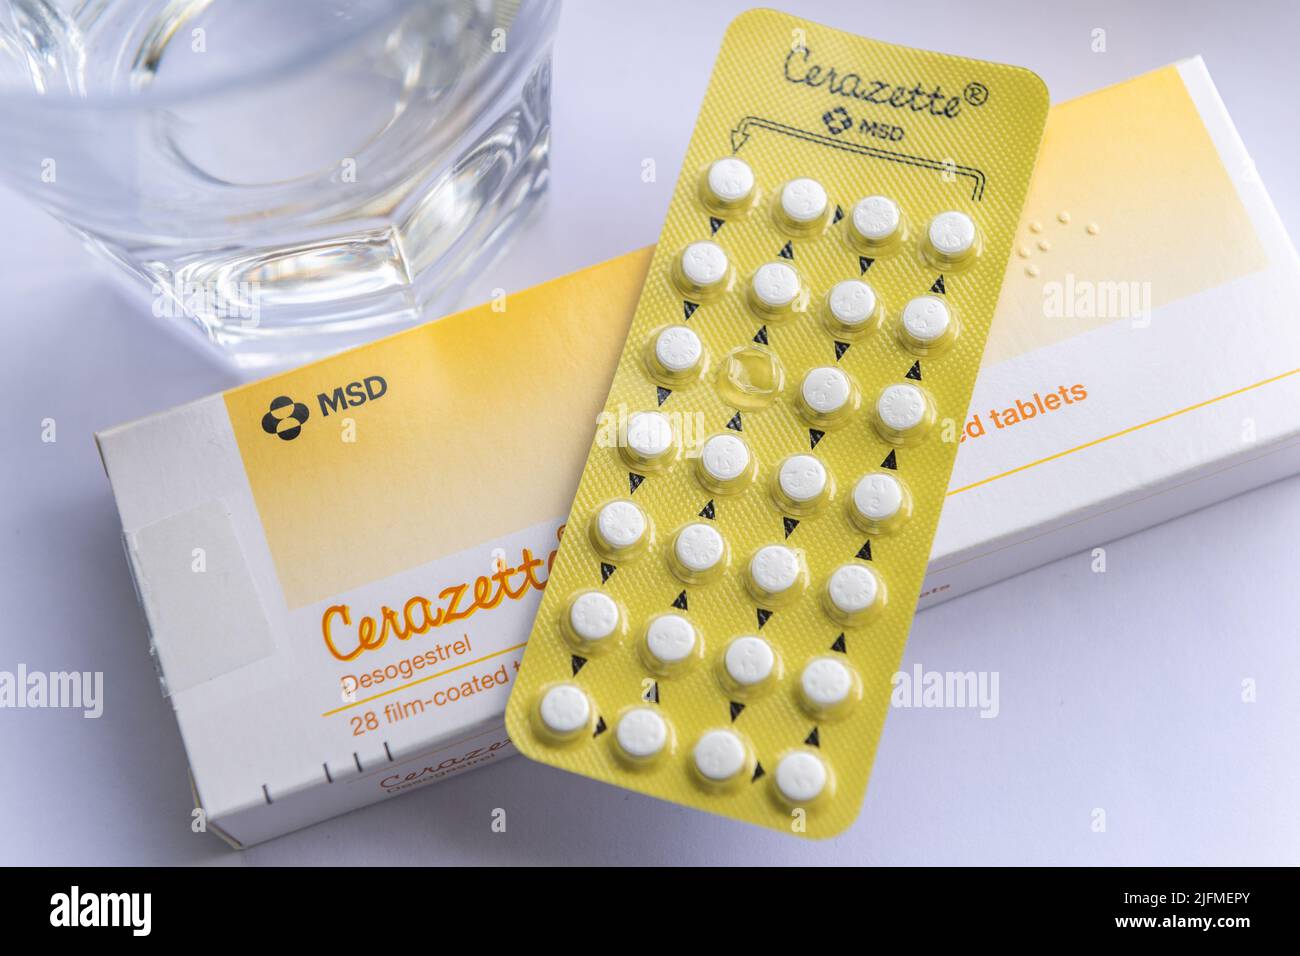 Cerazette Desogestrel Caja de tabletas anticonceptivas, envase blíster y un vaso de agua. ESTO ES UNA IMAGEN, NO EL PRODUCTO. Foto de stock